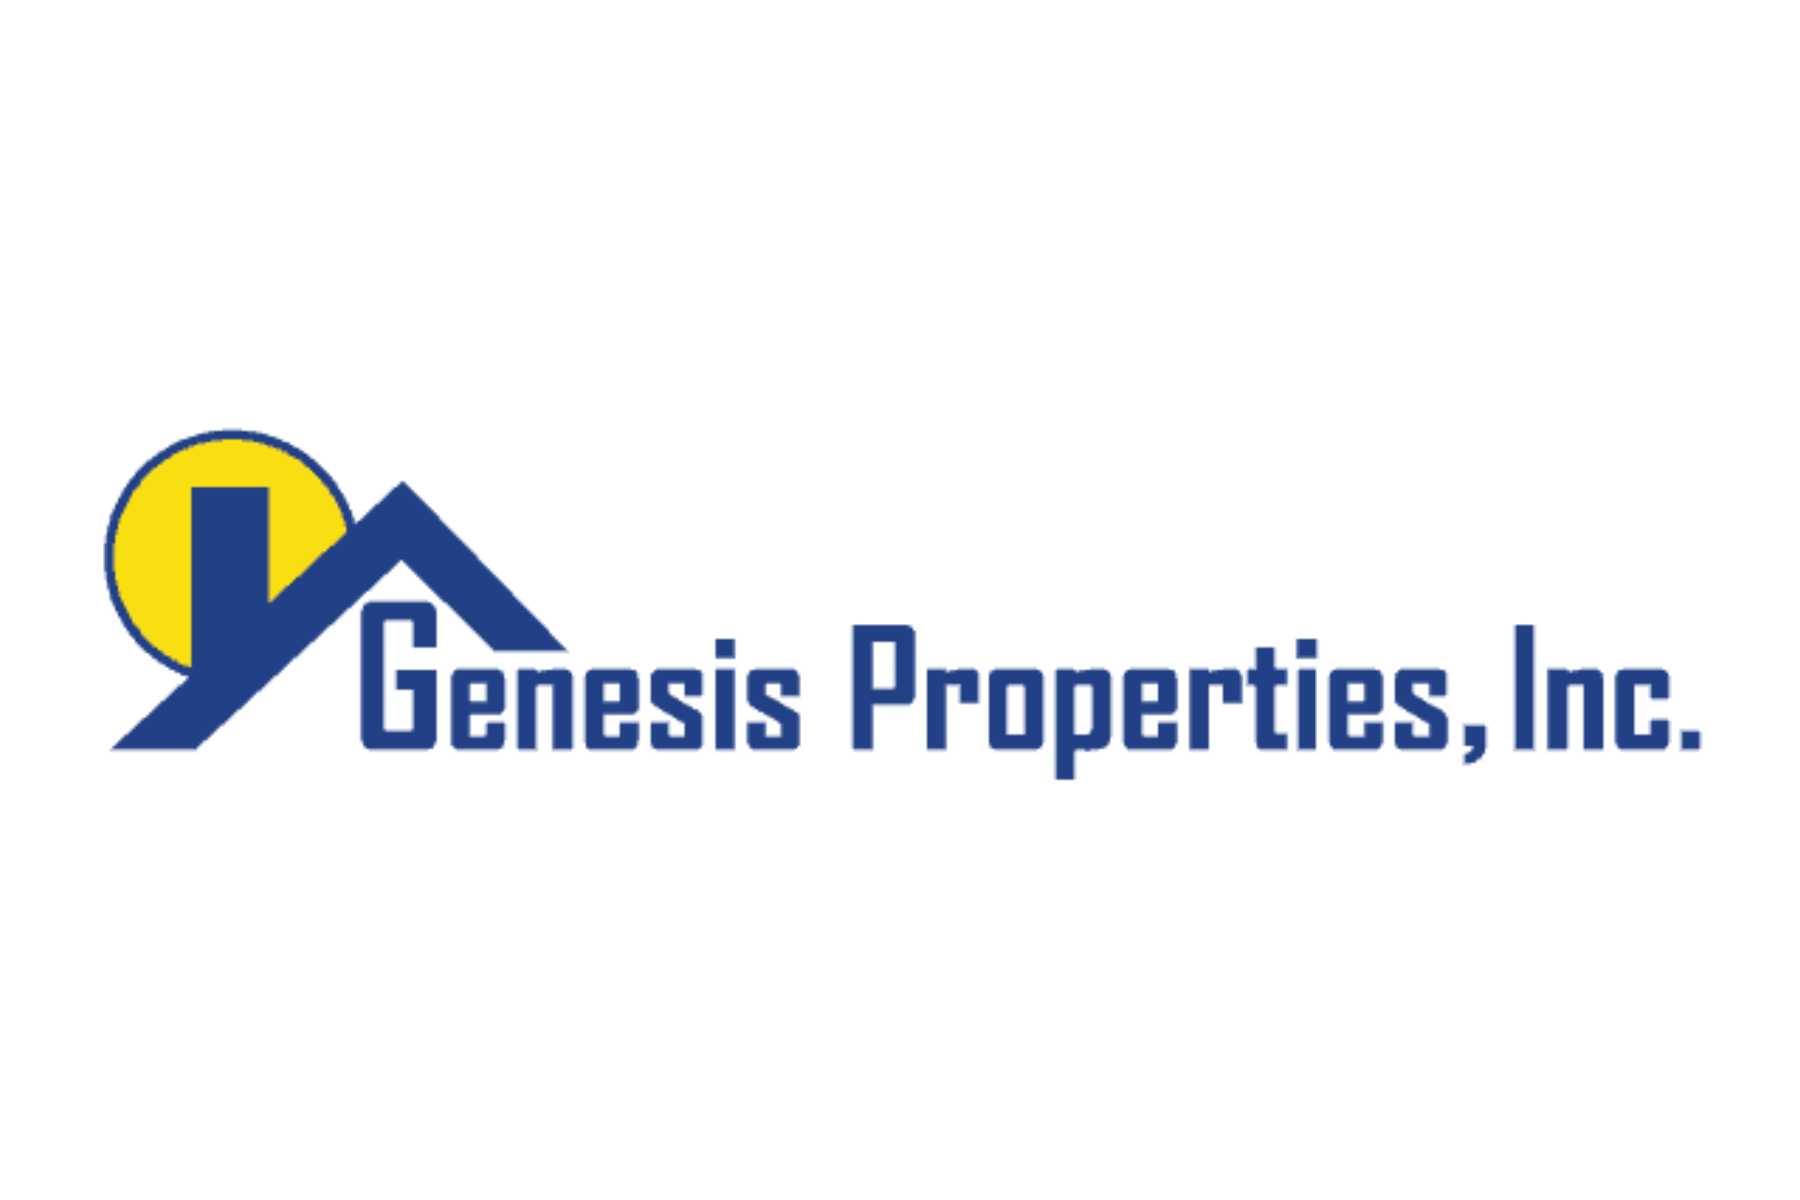 Genesis Properties